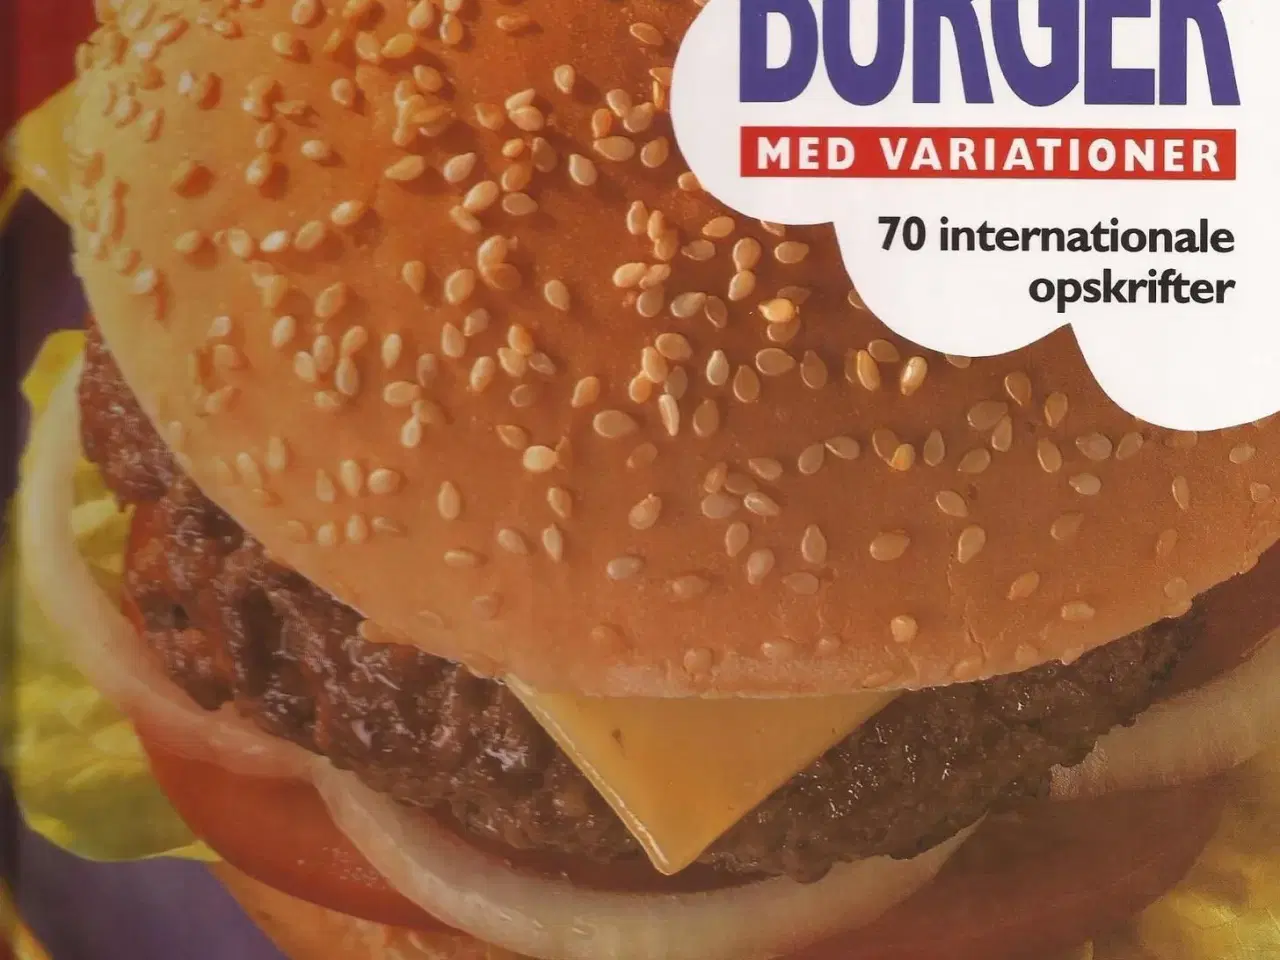 Billede 1 - Bog: Burger med variationer